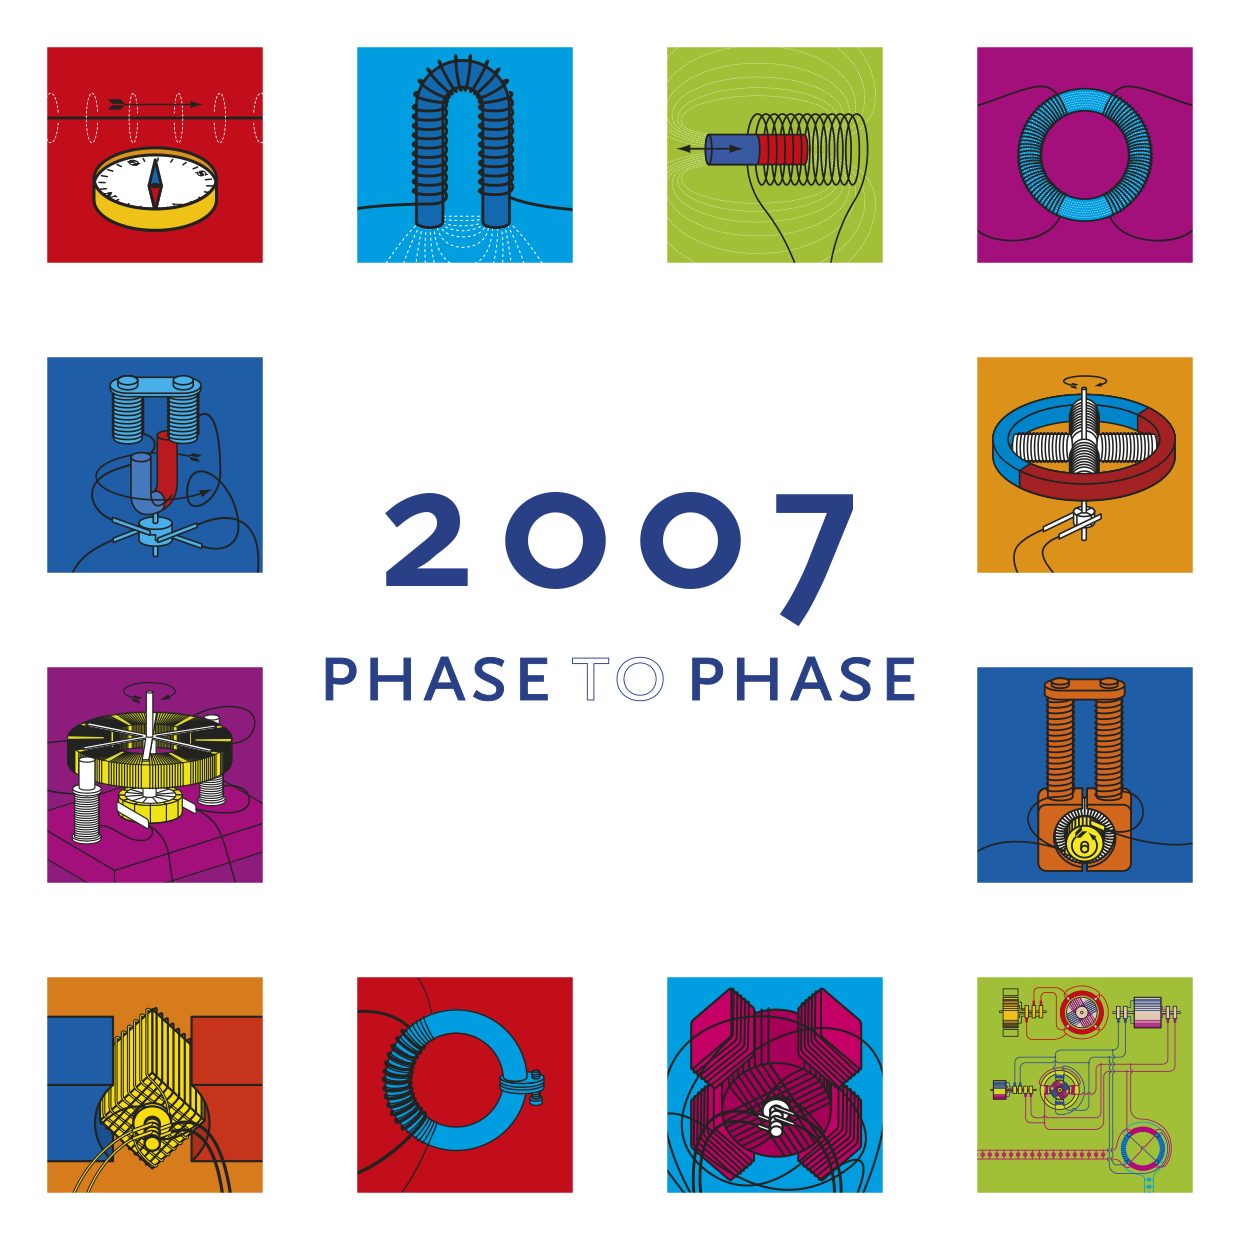 uitvindingen 2007 cover